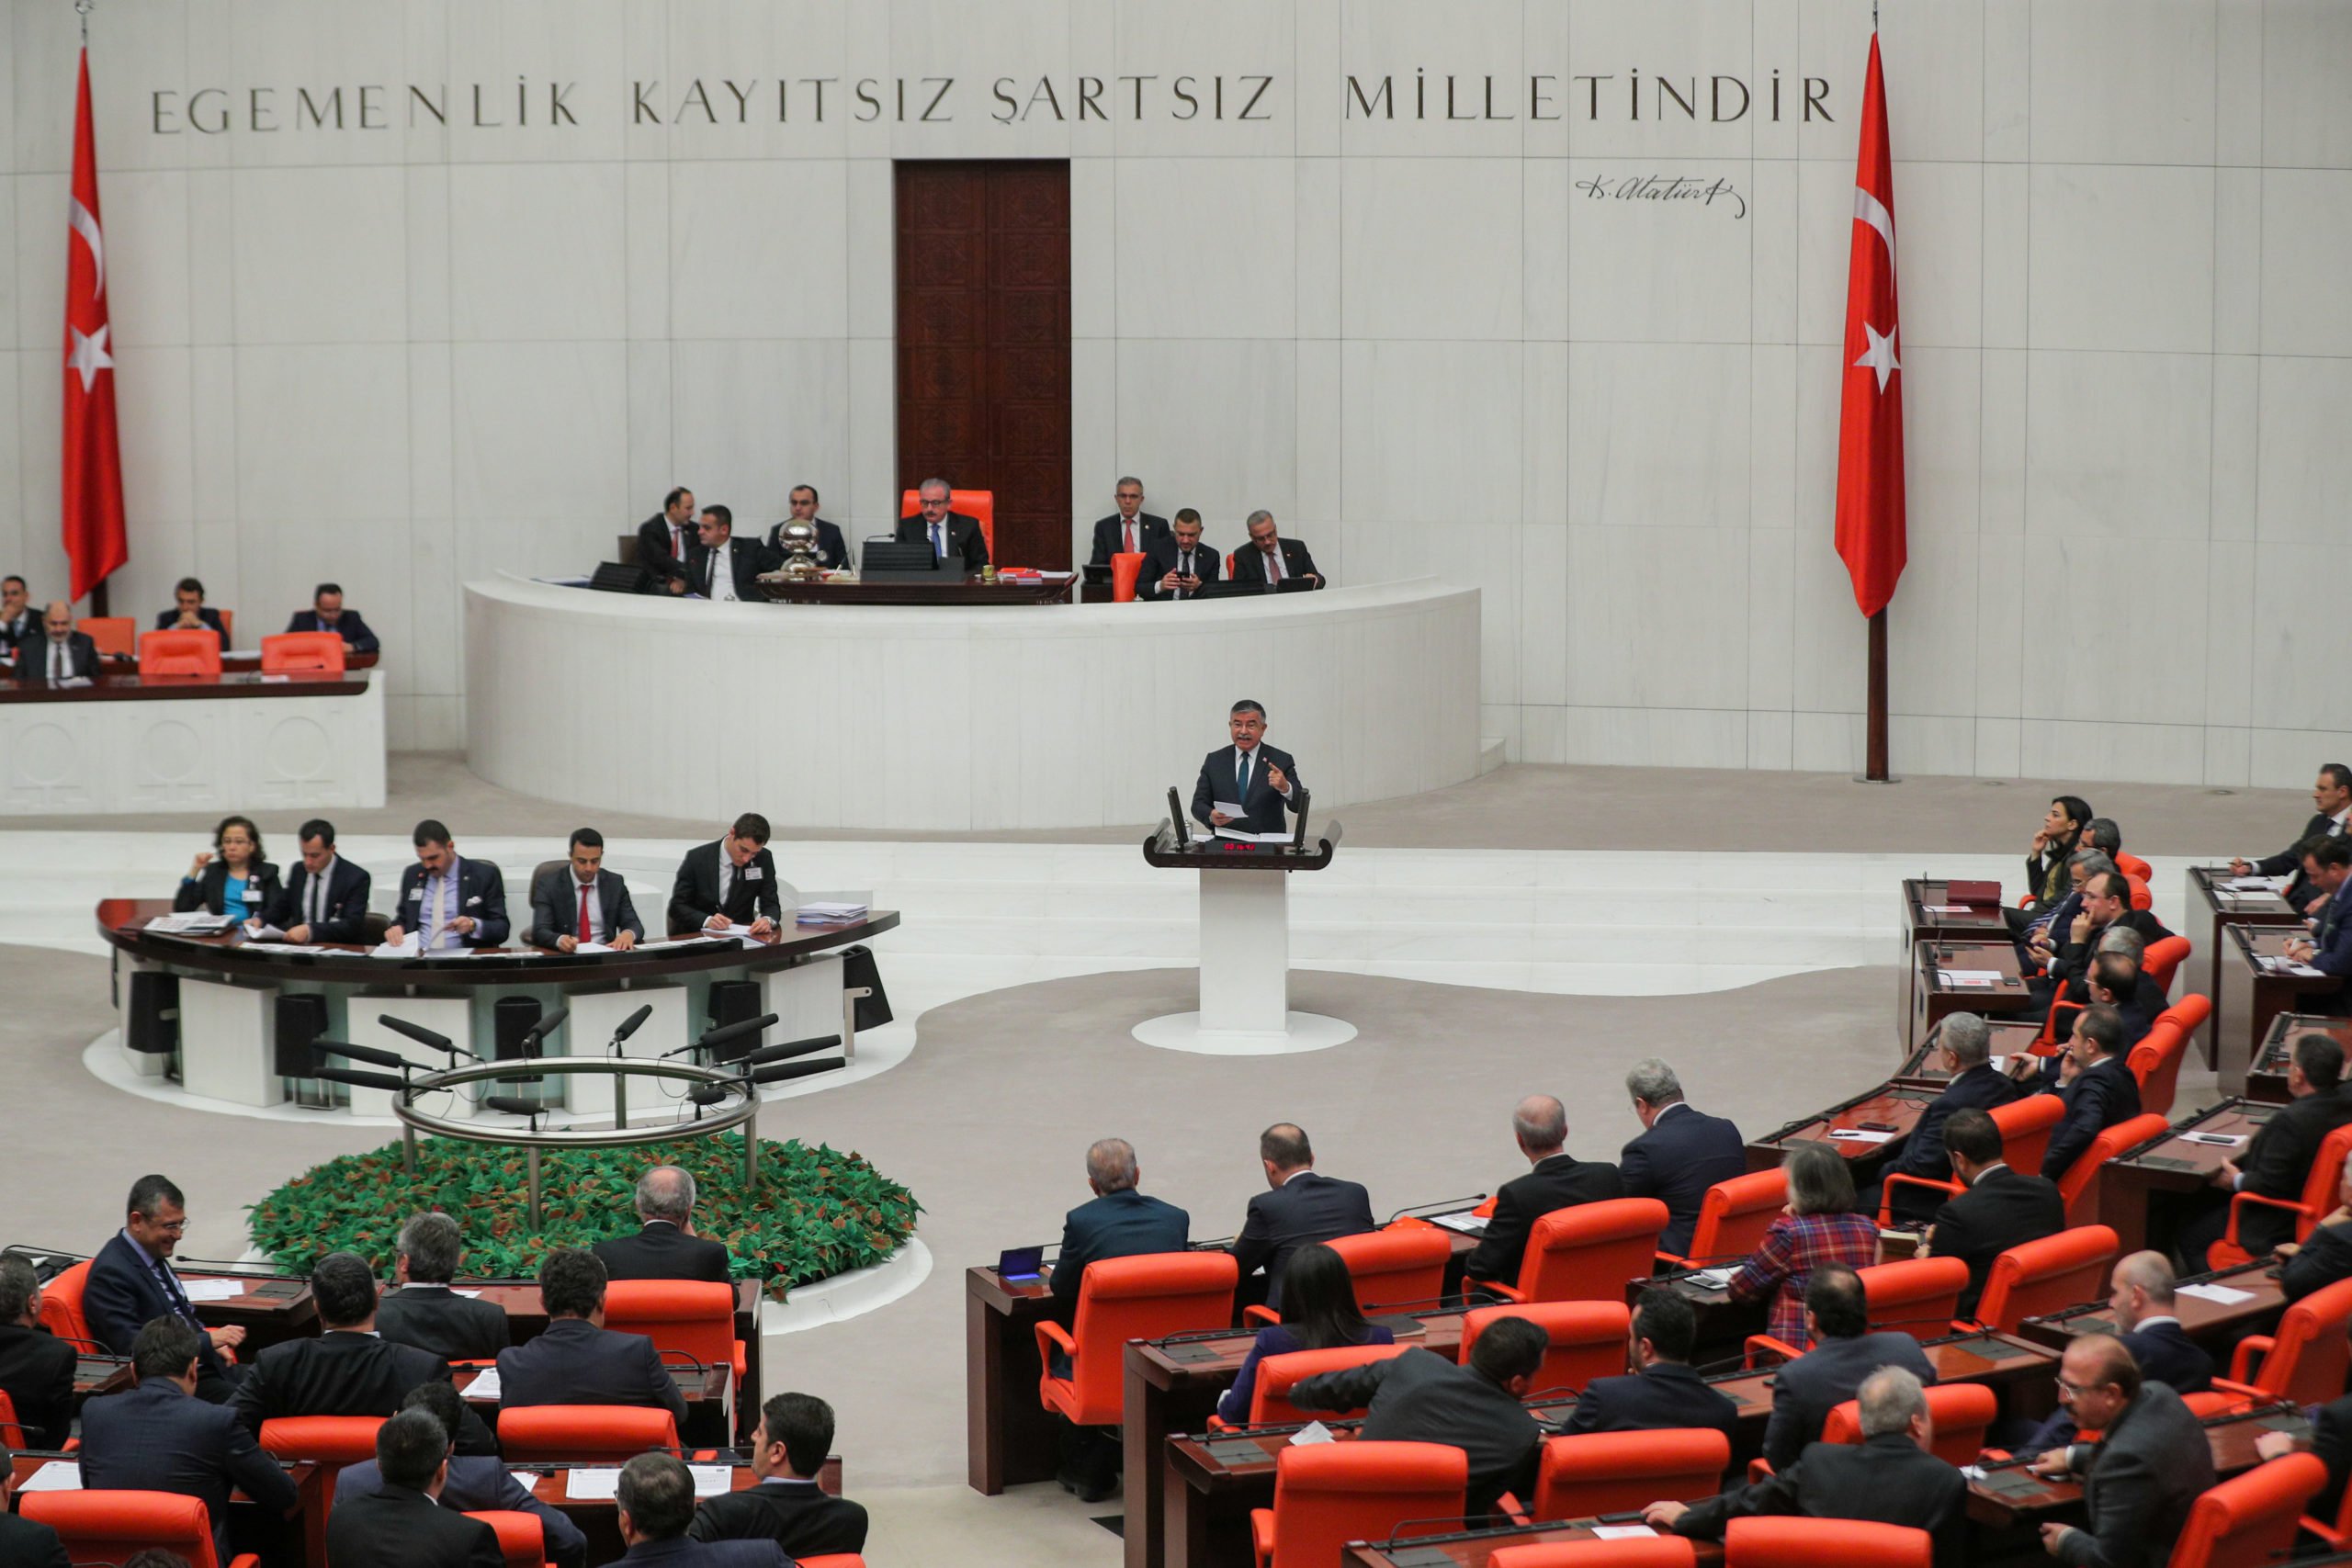 Το τουρκικό κοινοβούλιο ψηφίζει νόμους εποπτείας ενώσεων που λένε οι κριτικοί ότι θα καταπνίξουν τις ΜΚΟ